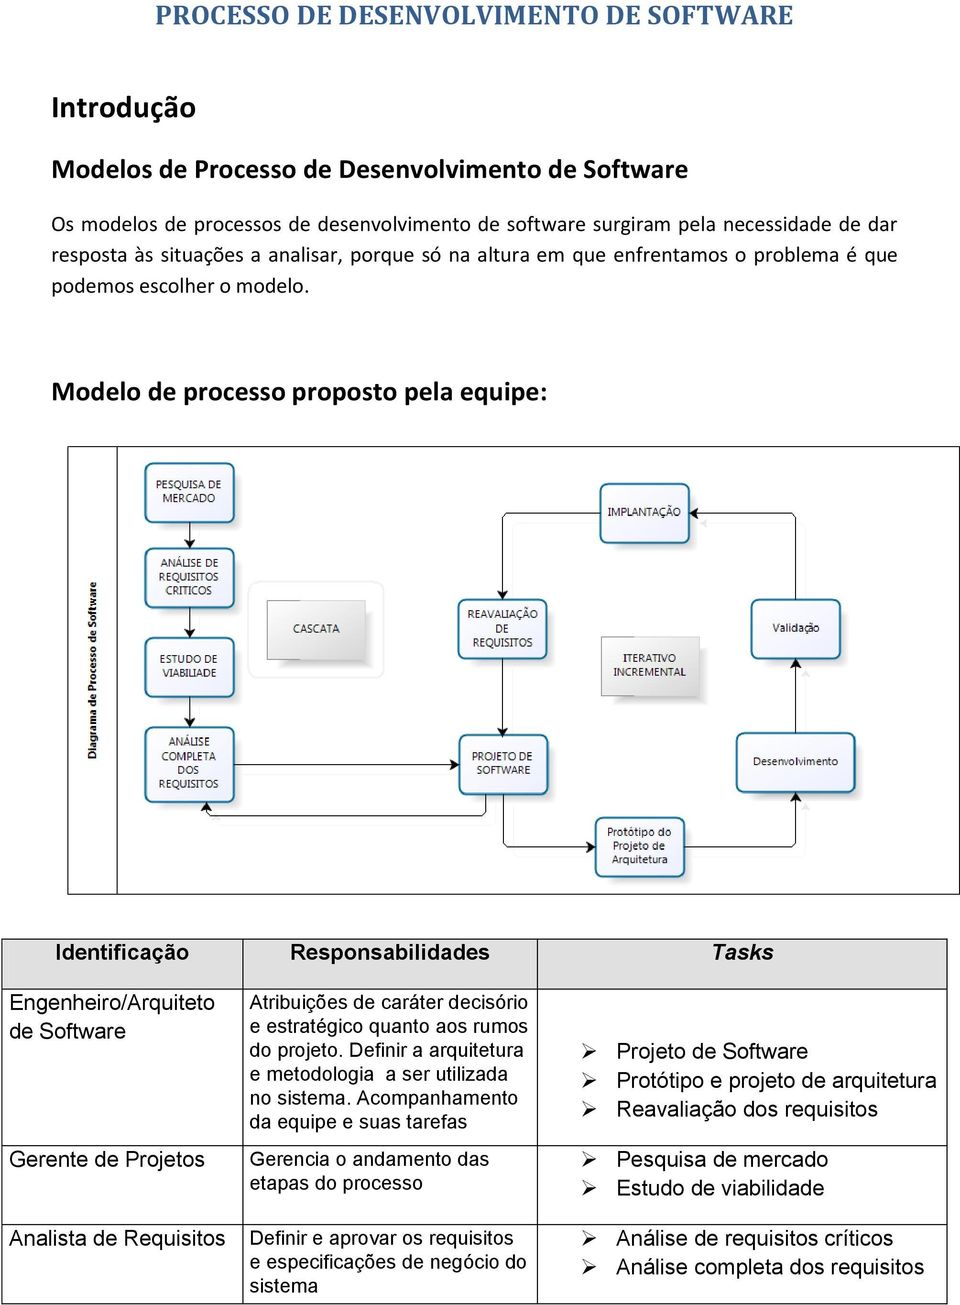 Modelo de processo proposto pela equipe: Identificação Responsabilidades Tasks Engenheiro/Arquiteto de Software Gerente de Projetos Analista de Requisitos Atribuições de caráter decisório e